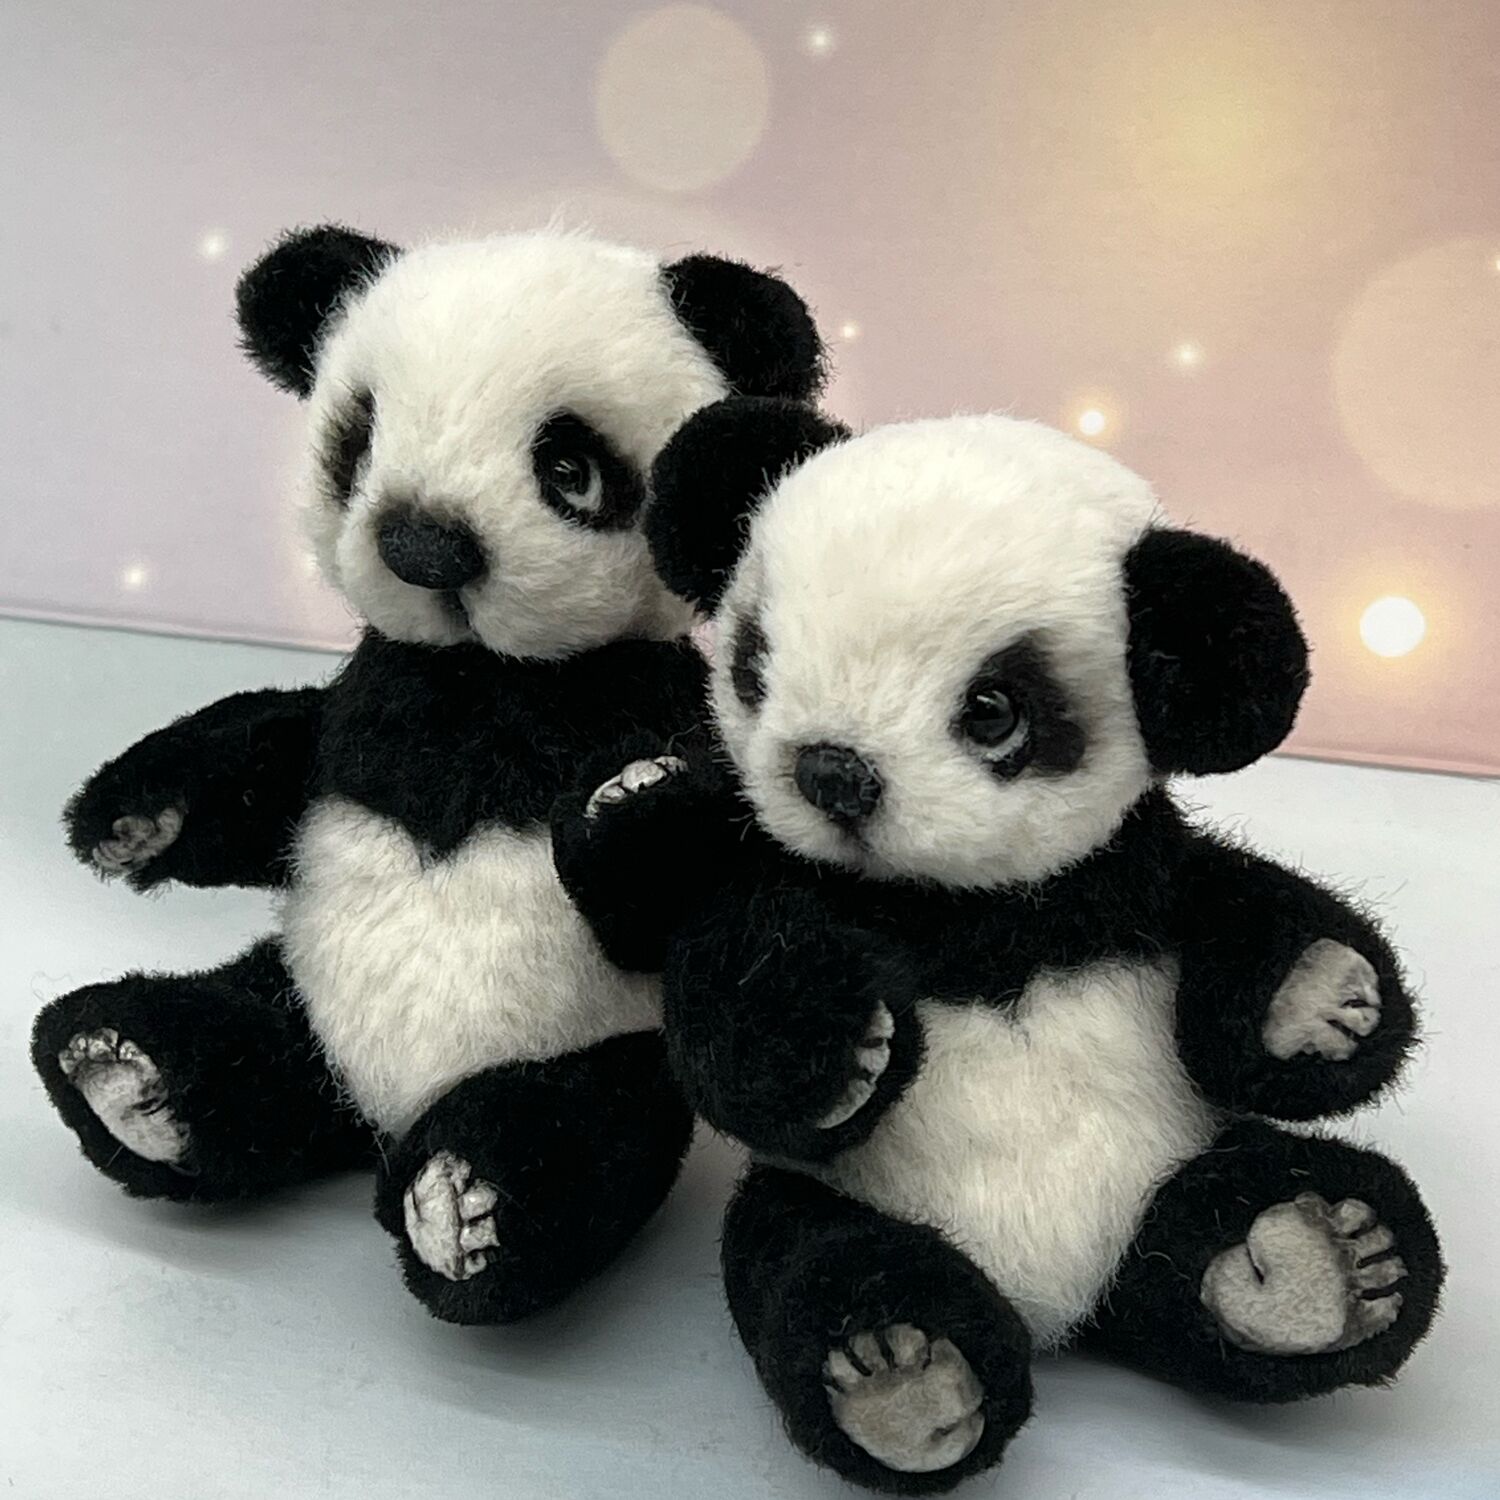 Купить милашку. Лапка панды. Панда милашка милый поющая игрушка. Фото пандочек милых для фотошопа. Панда милашка милый поющая игрушка с шапкой.